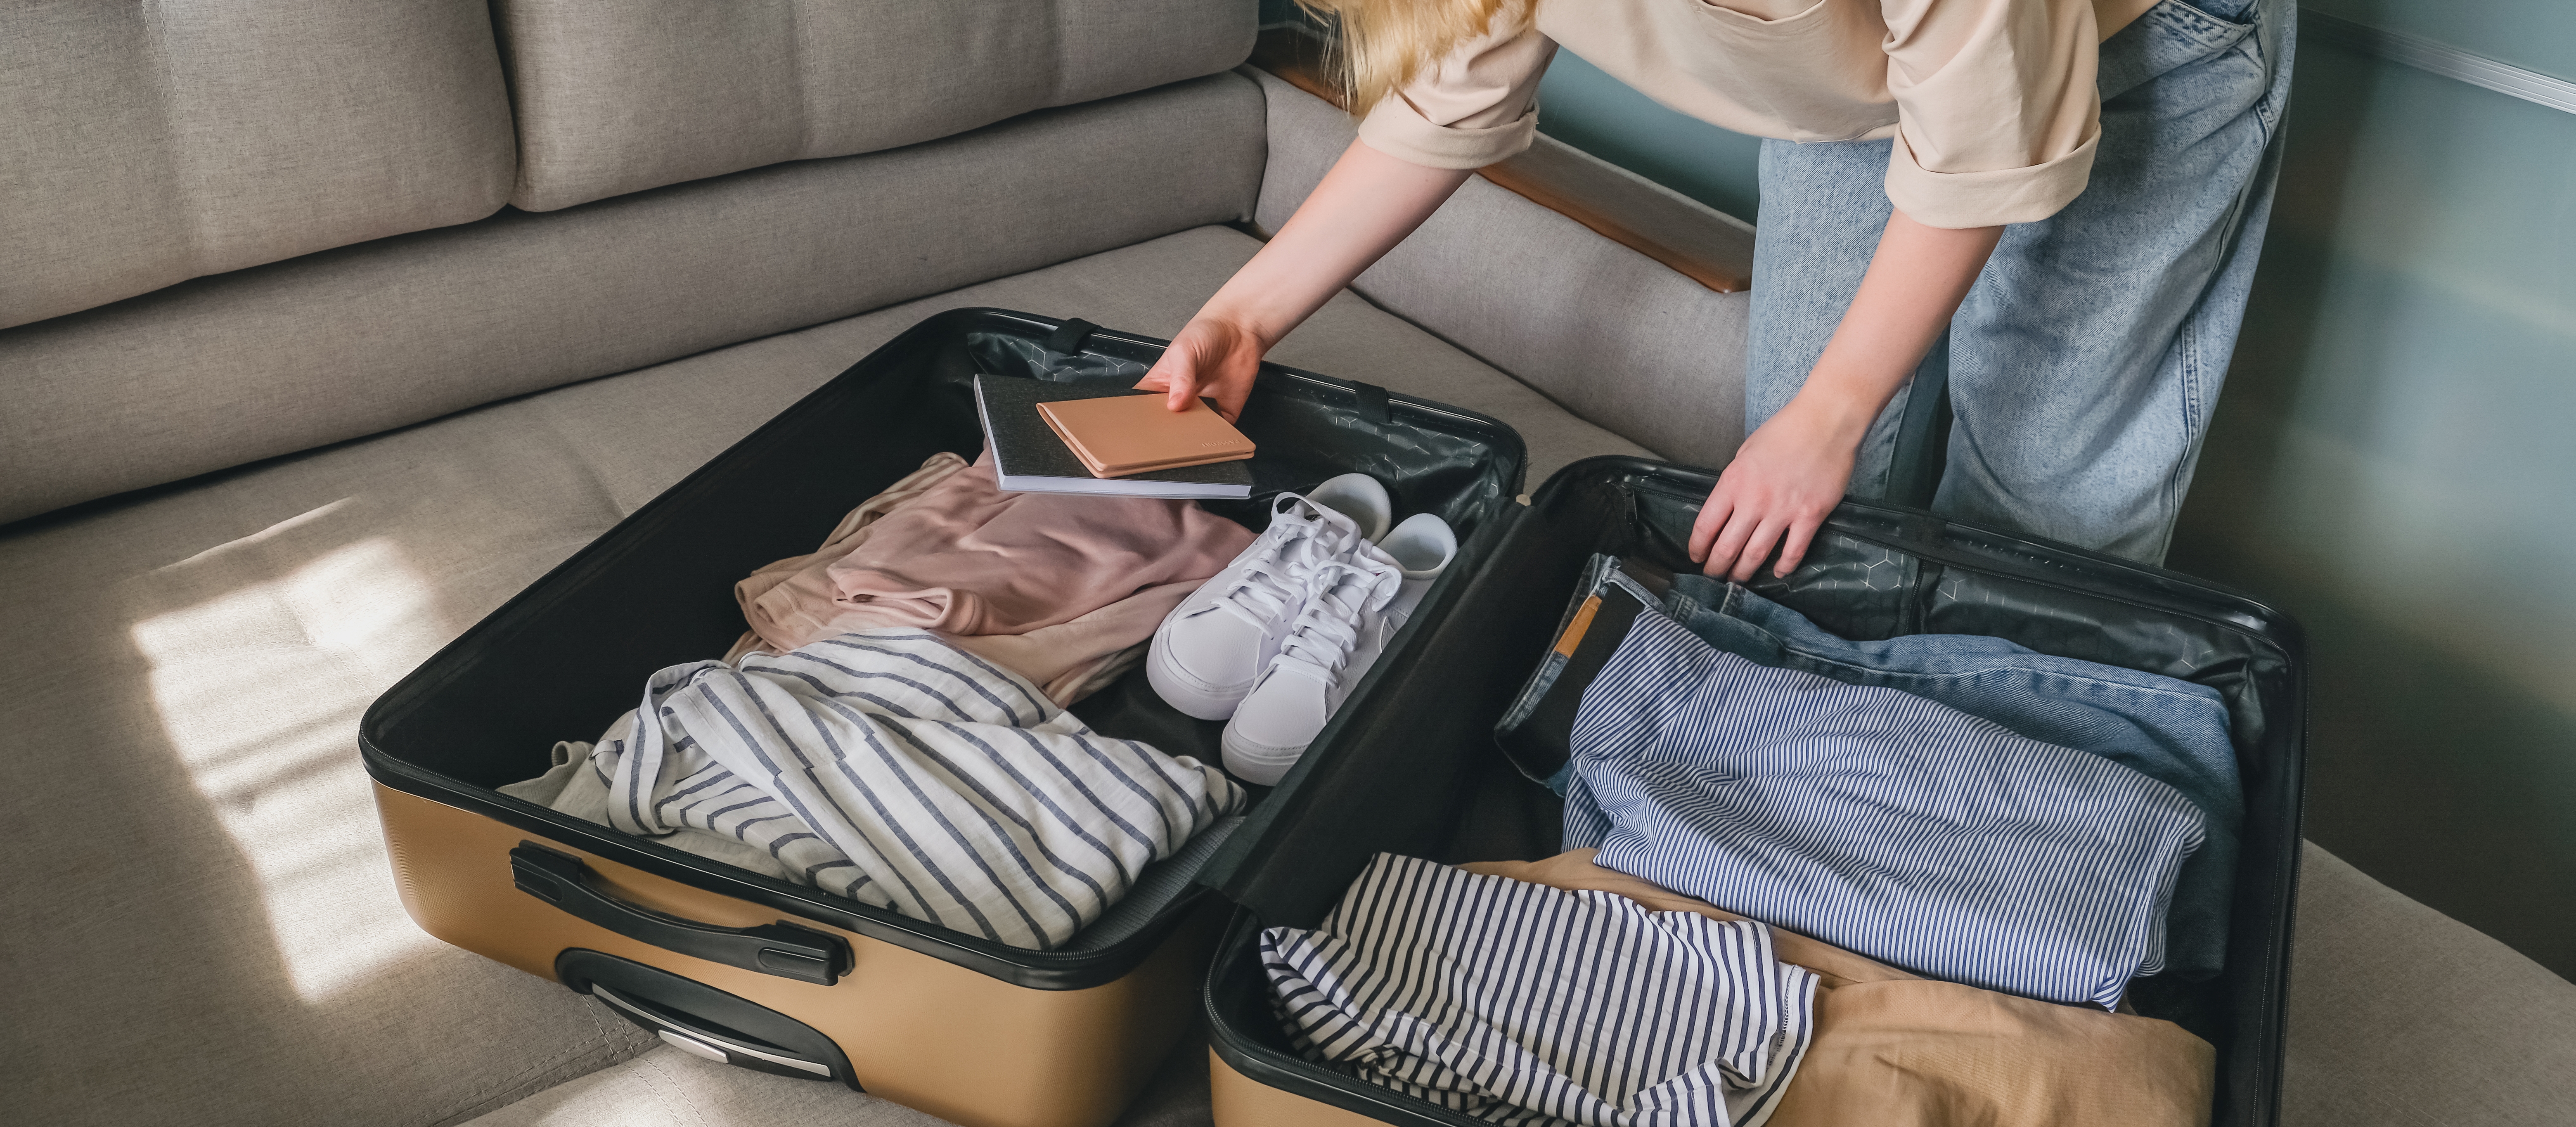 Eine Frau packt einen Koffer | Quelle: Shutterstock